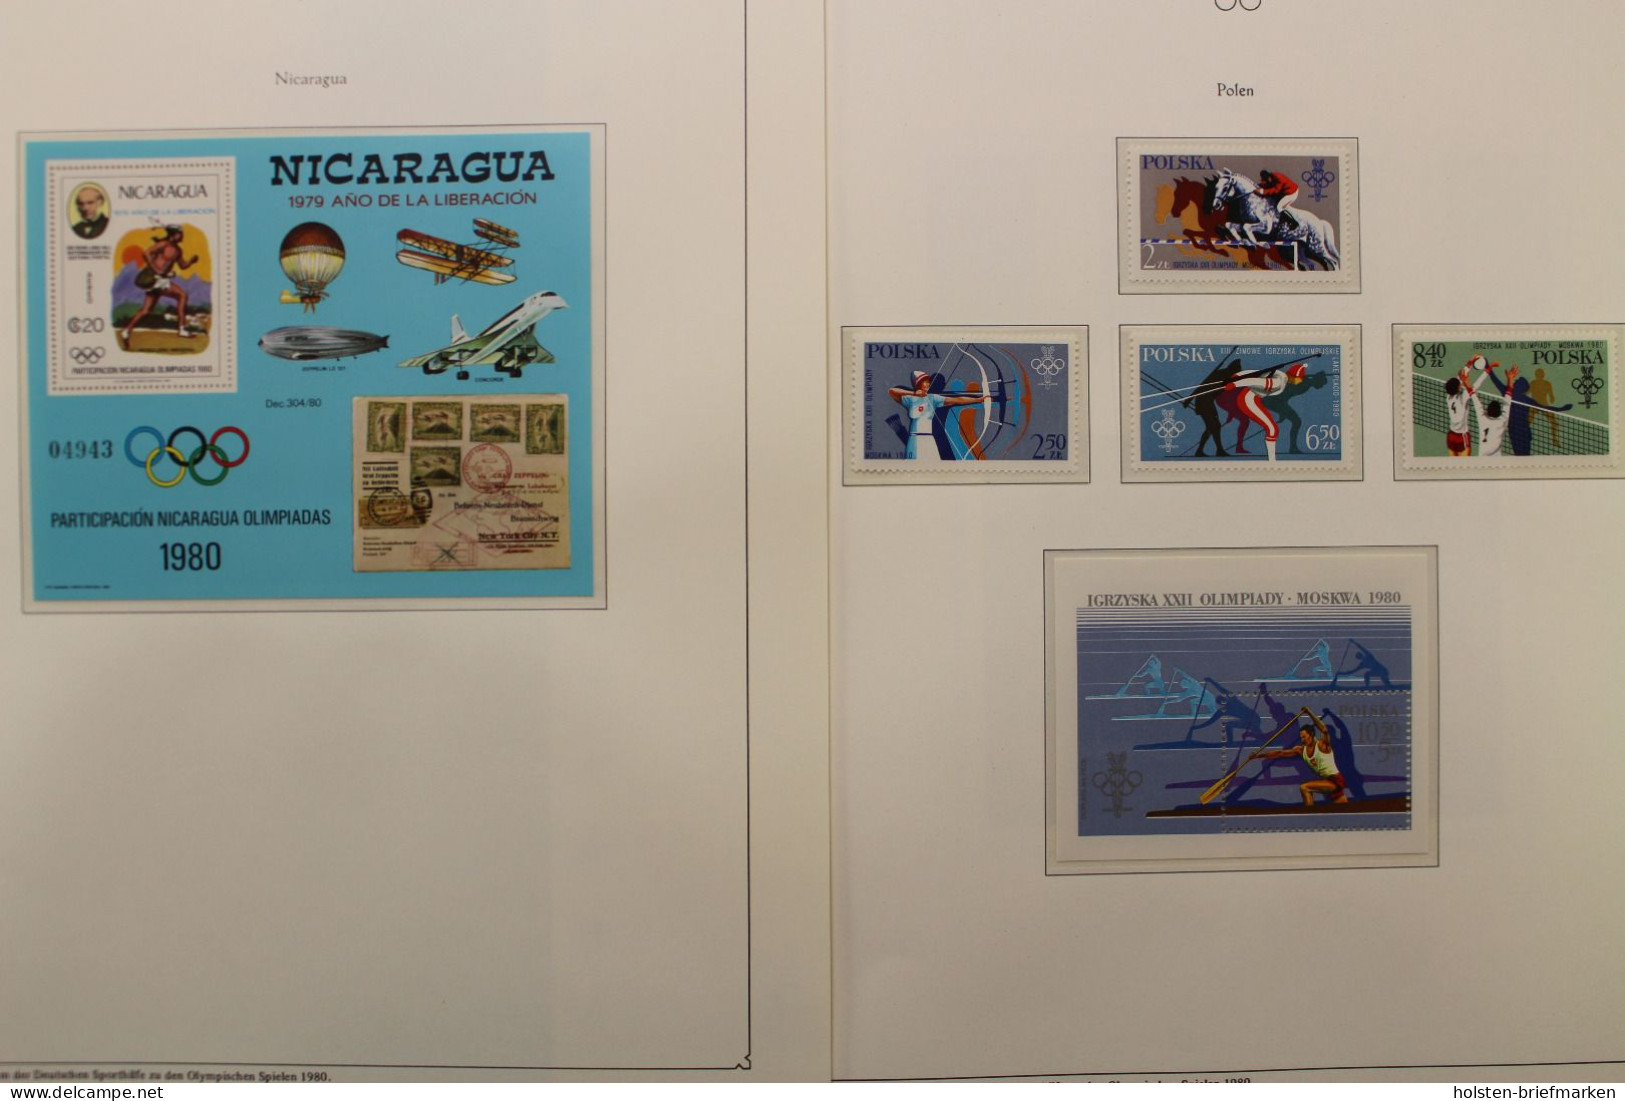 Olympische Spiele 1980, über 80 Vordruckblätter mit Briefmarken